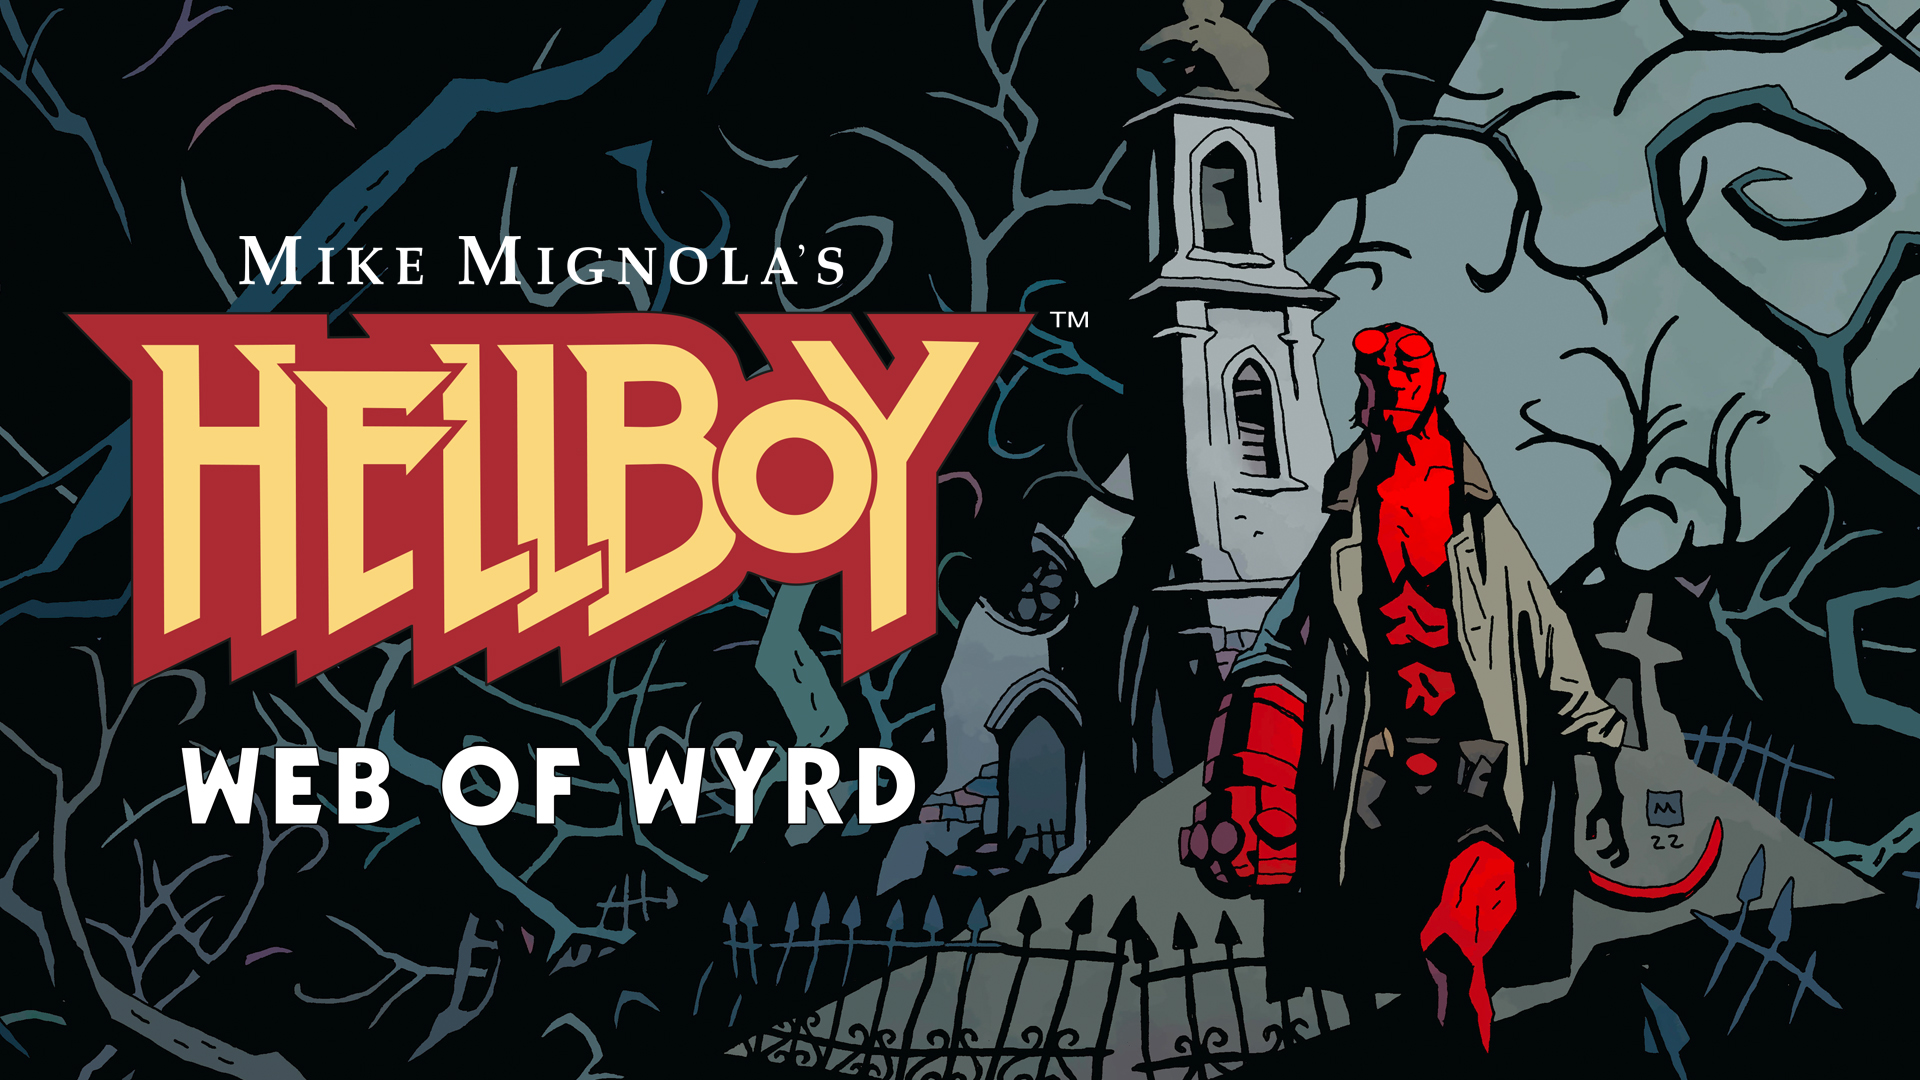 Hellboy web of wyrd 2022 12 08 22 006 2